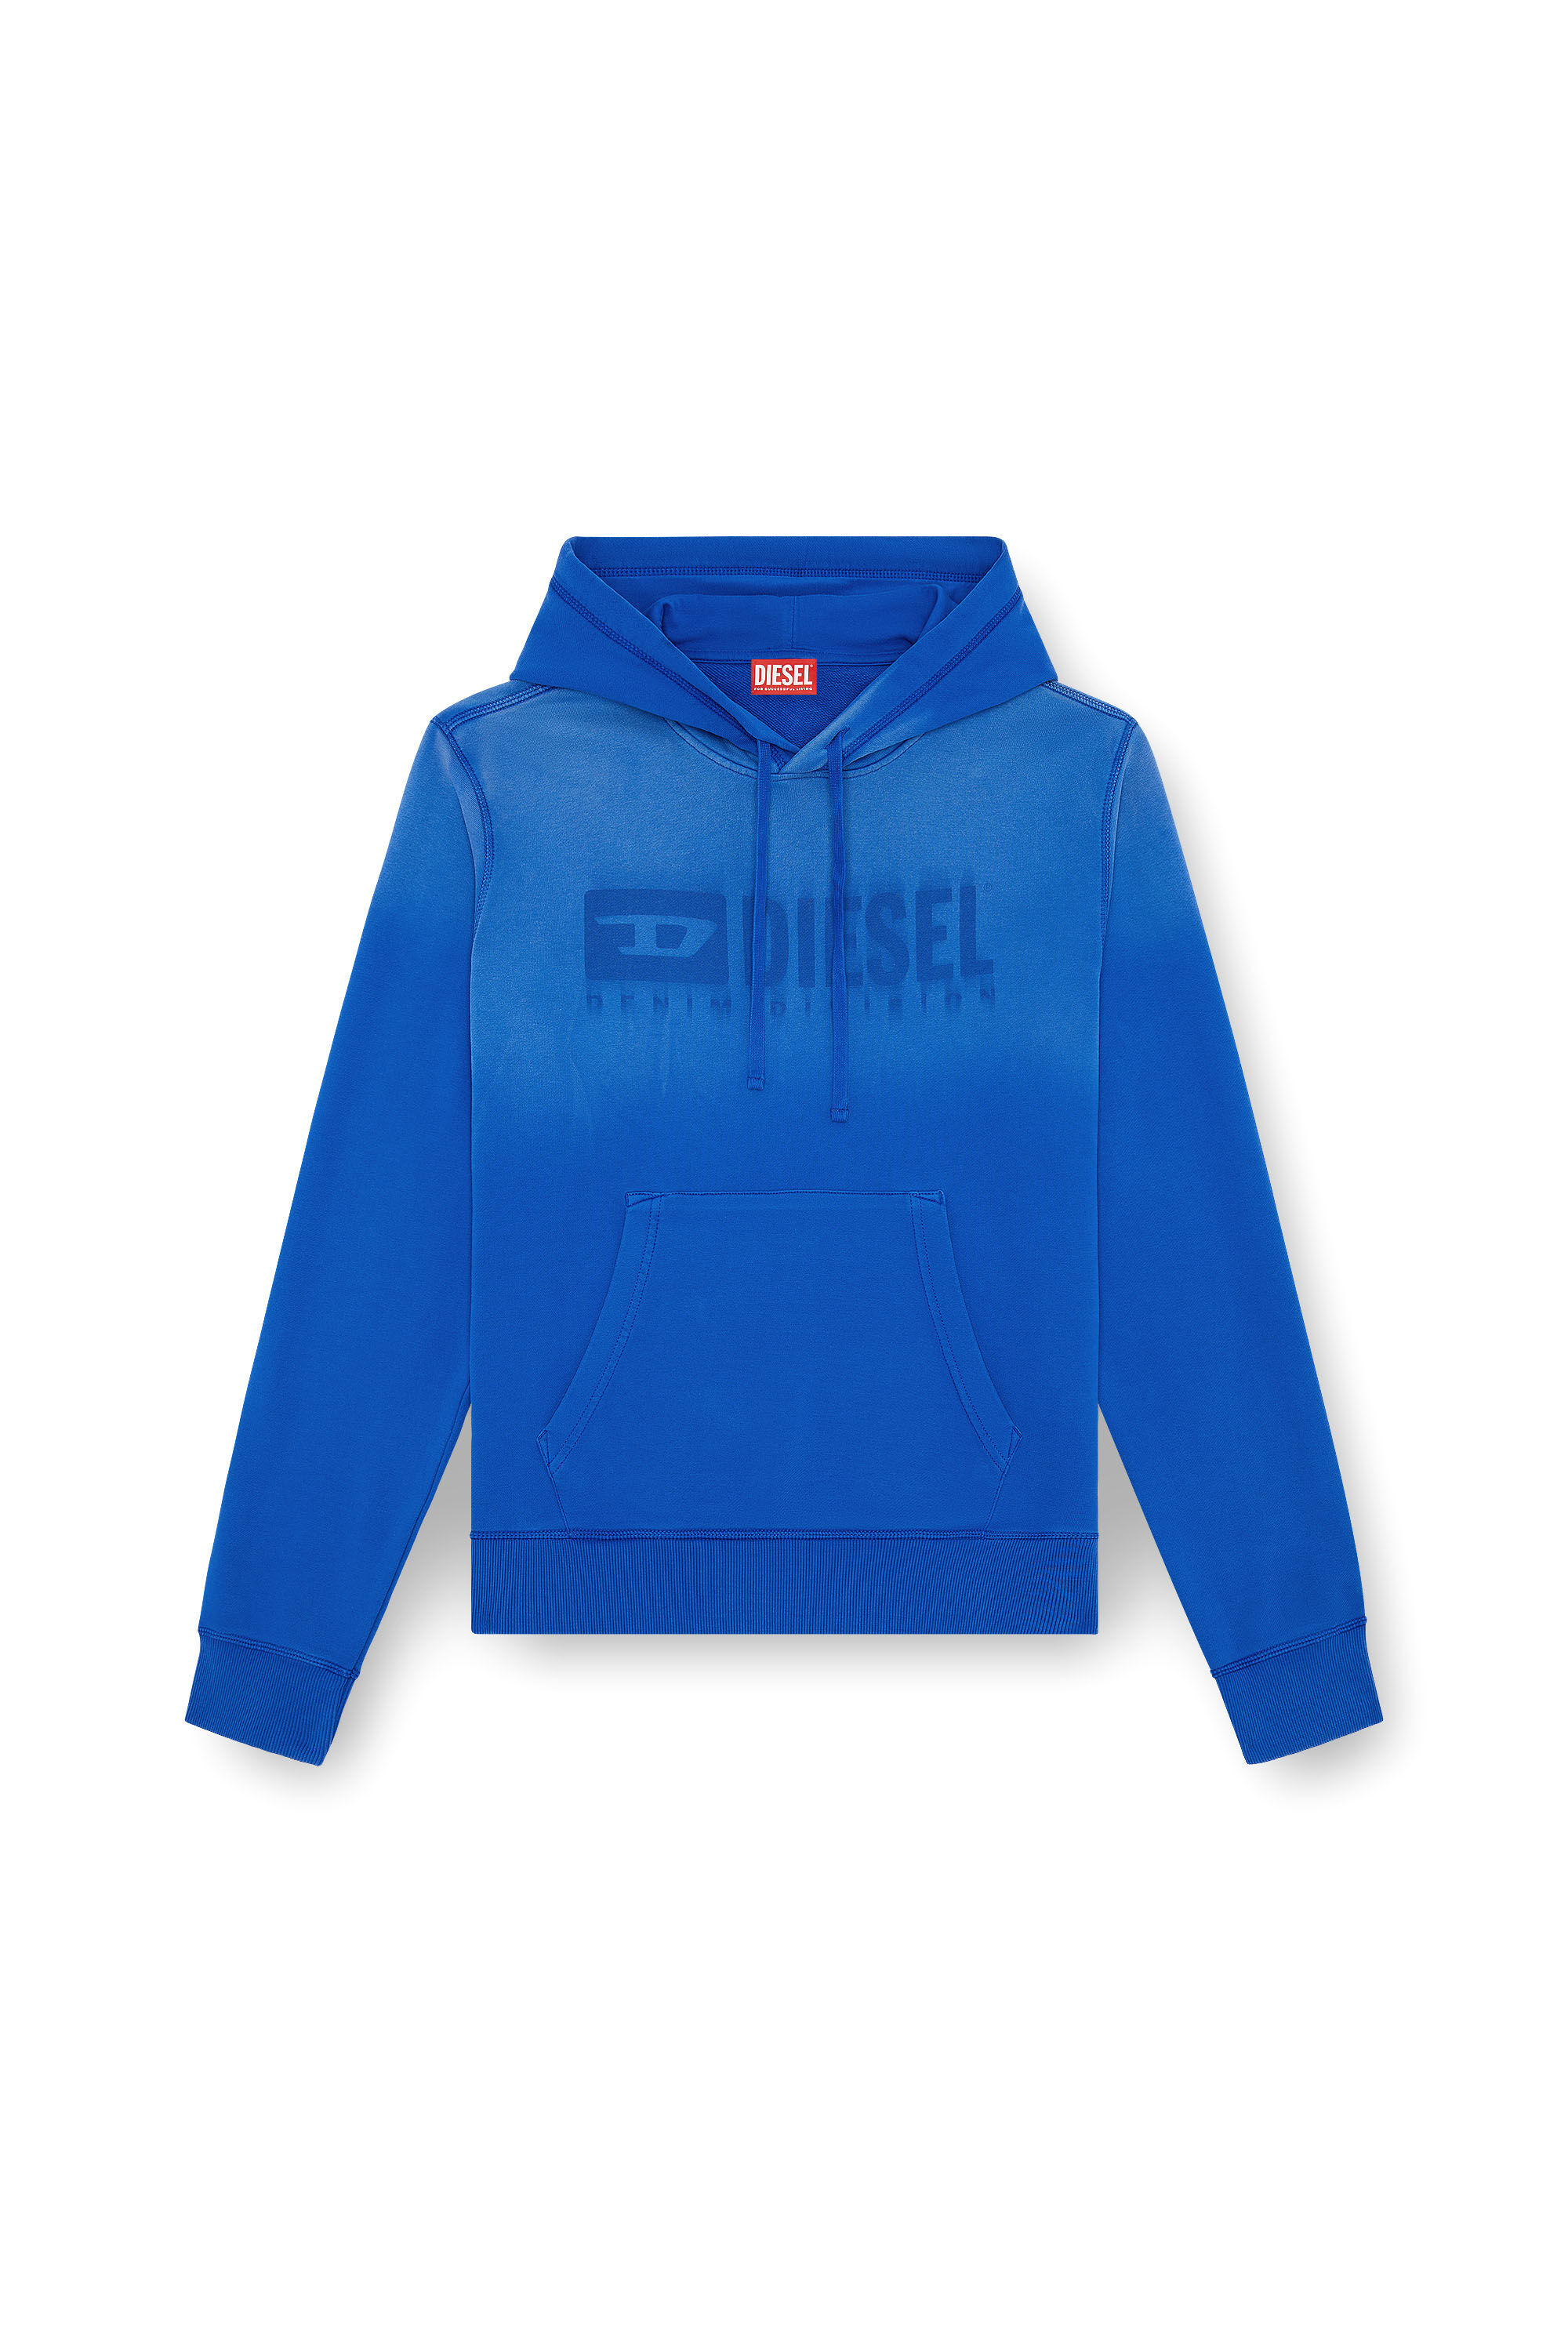 Diesel - S-GINN-HOOD-K44, Man Faded hoodie with Denim Division logo in Blue - Image 4